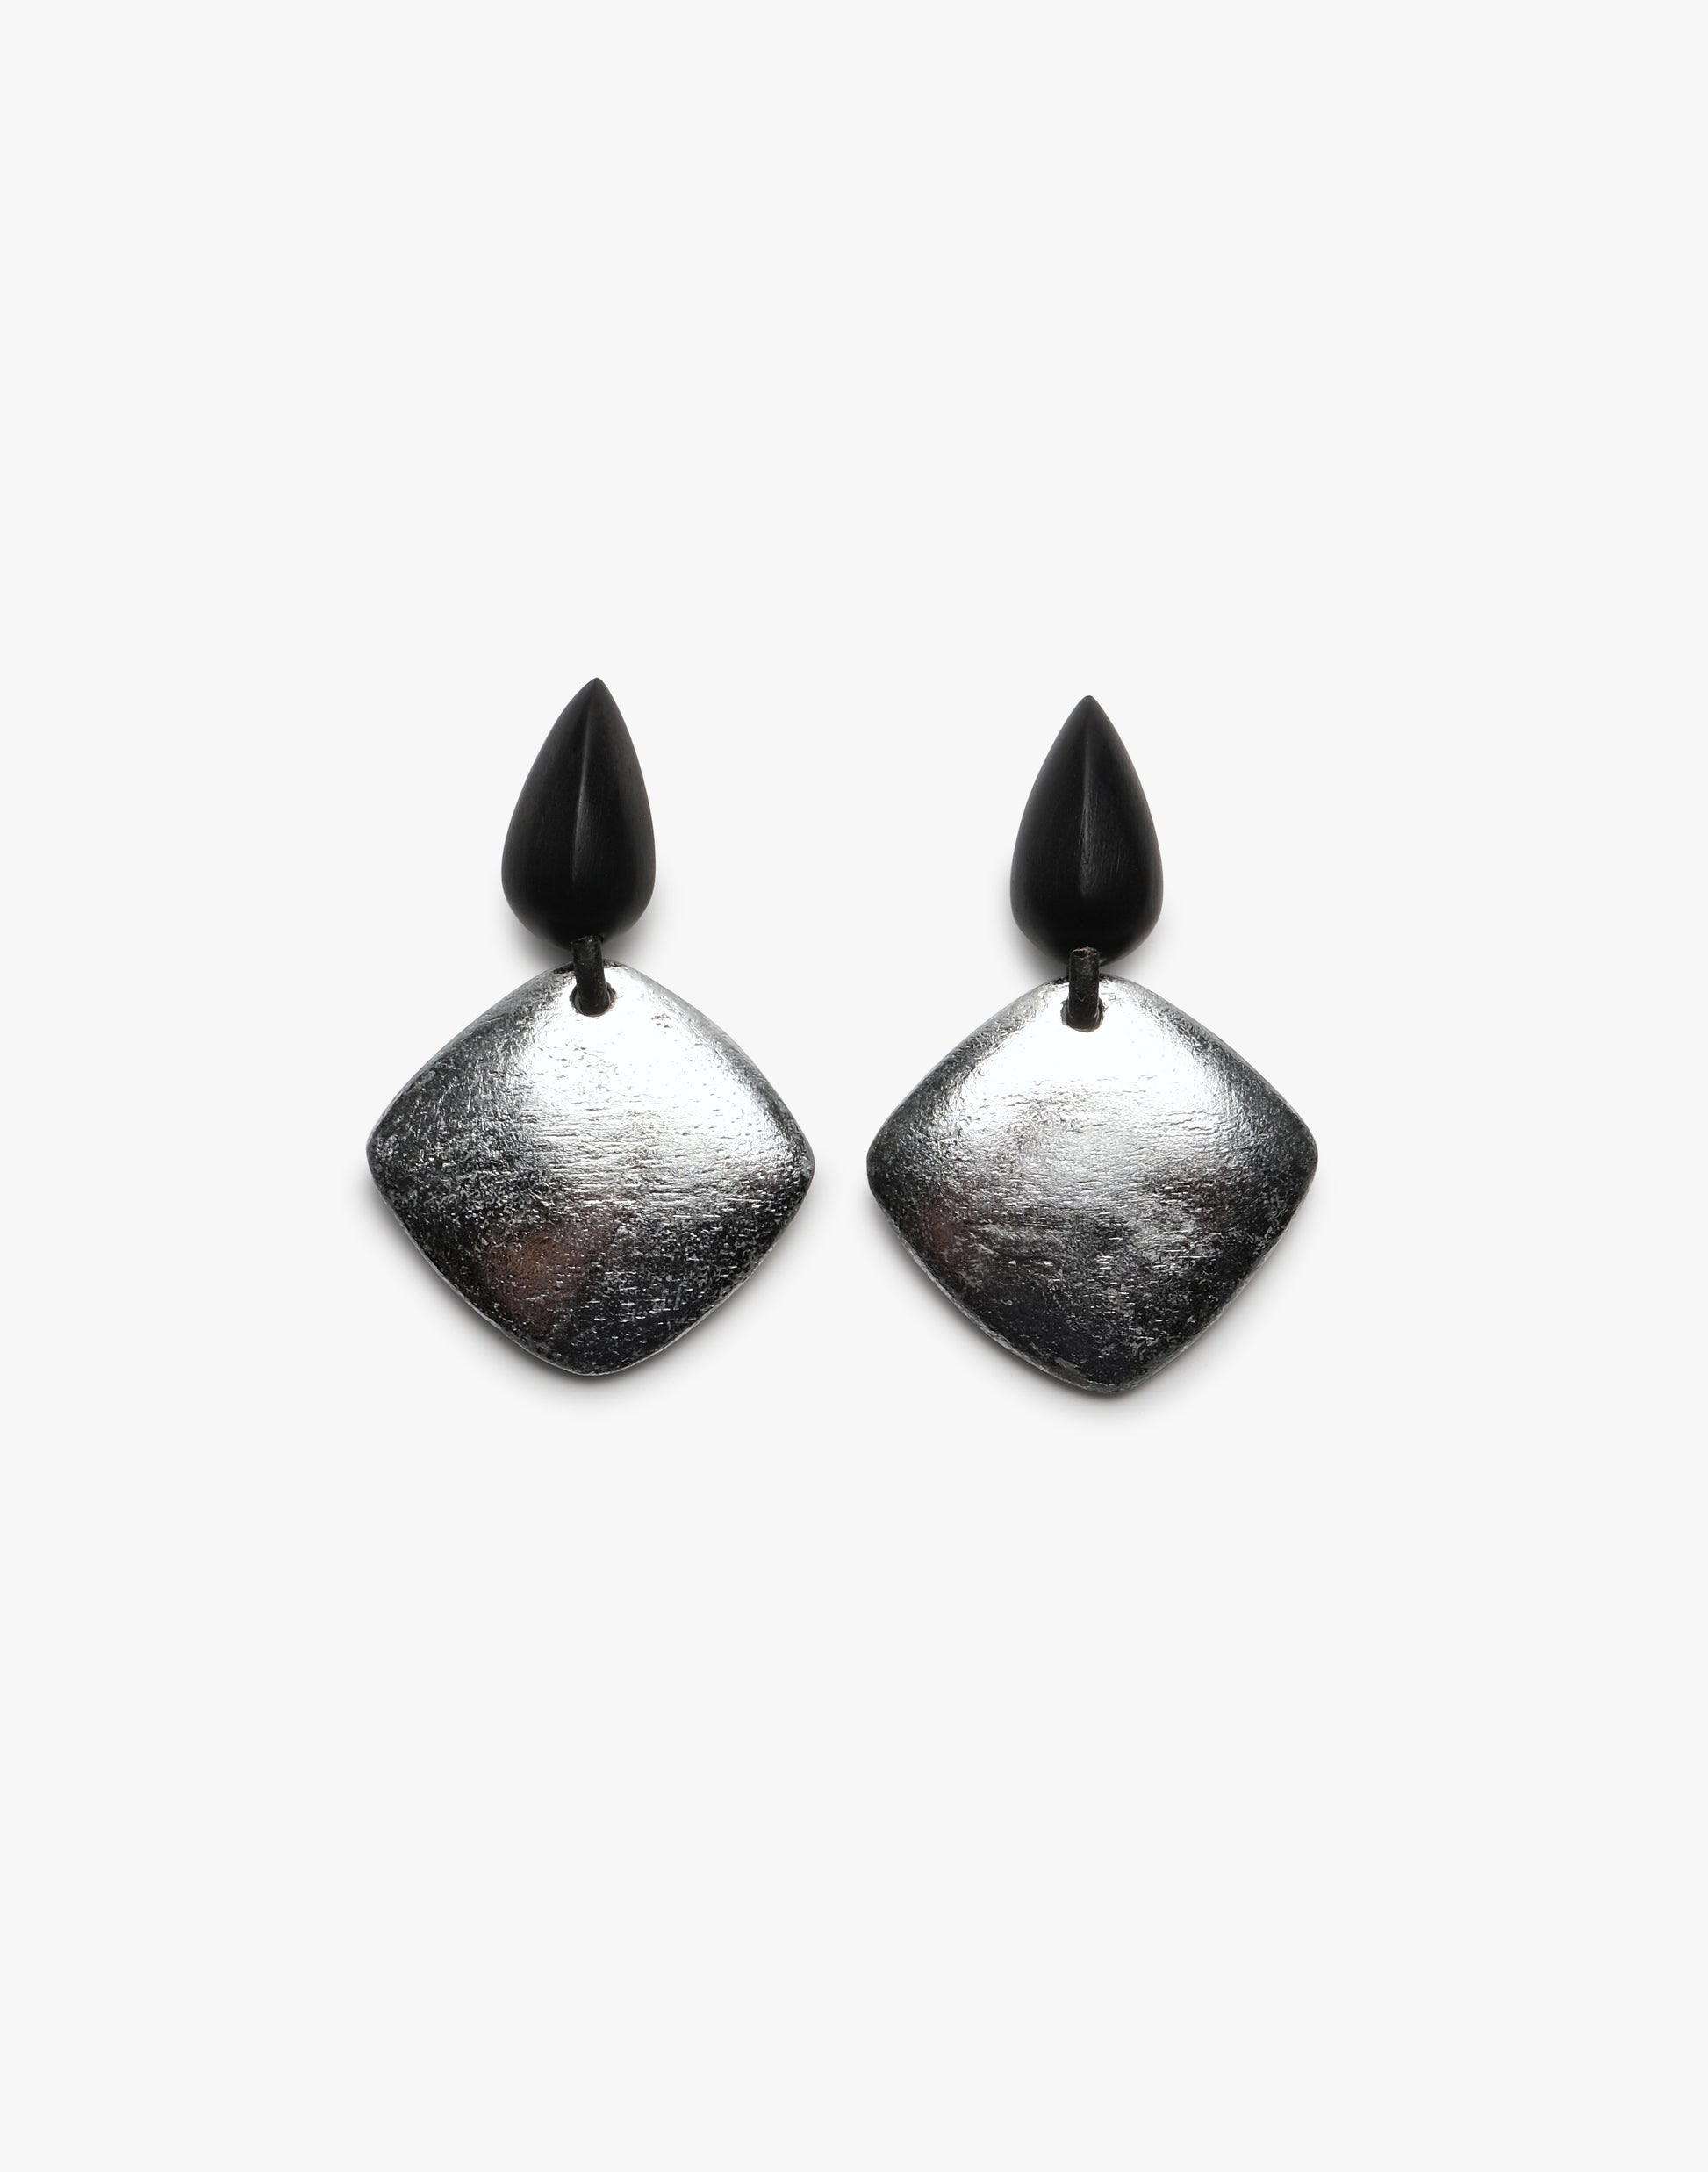 Bruta earring: Acacia, silver foil, monies